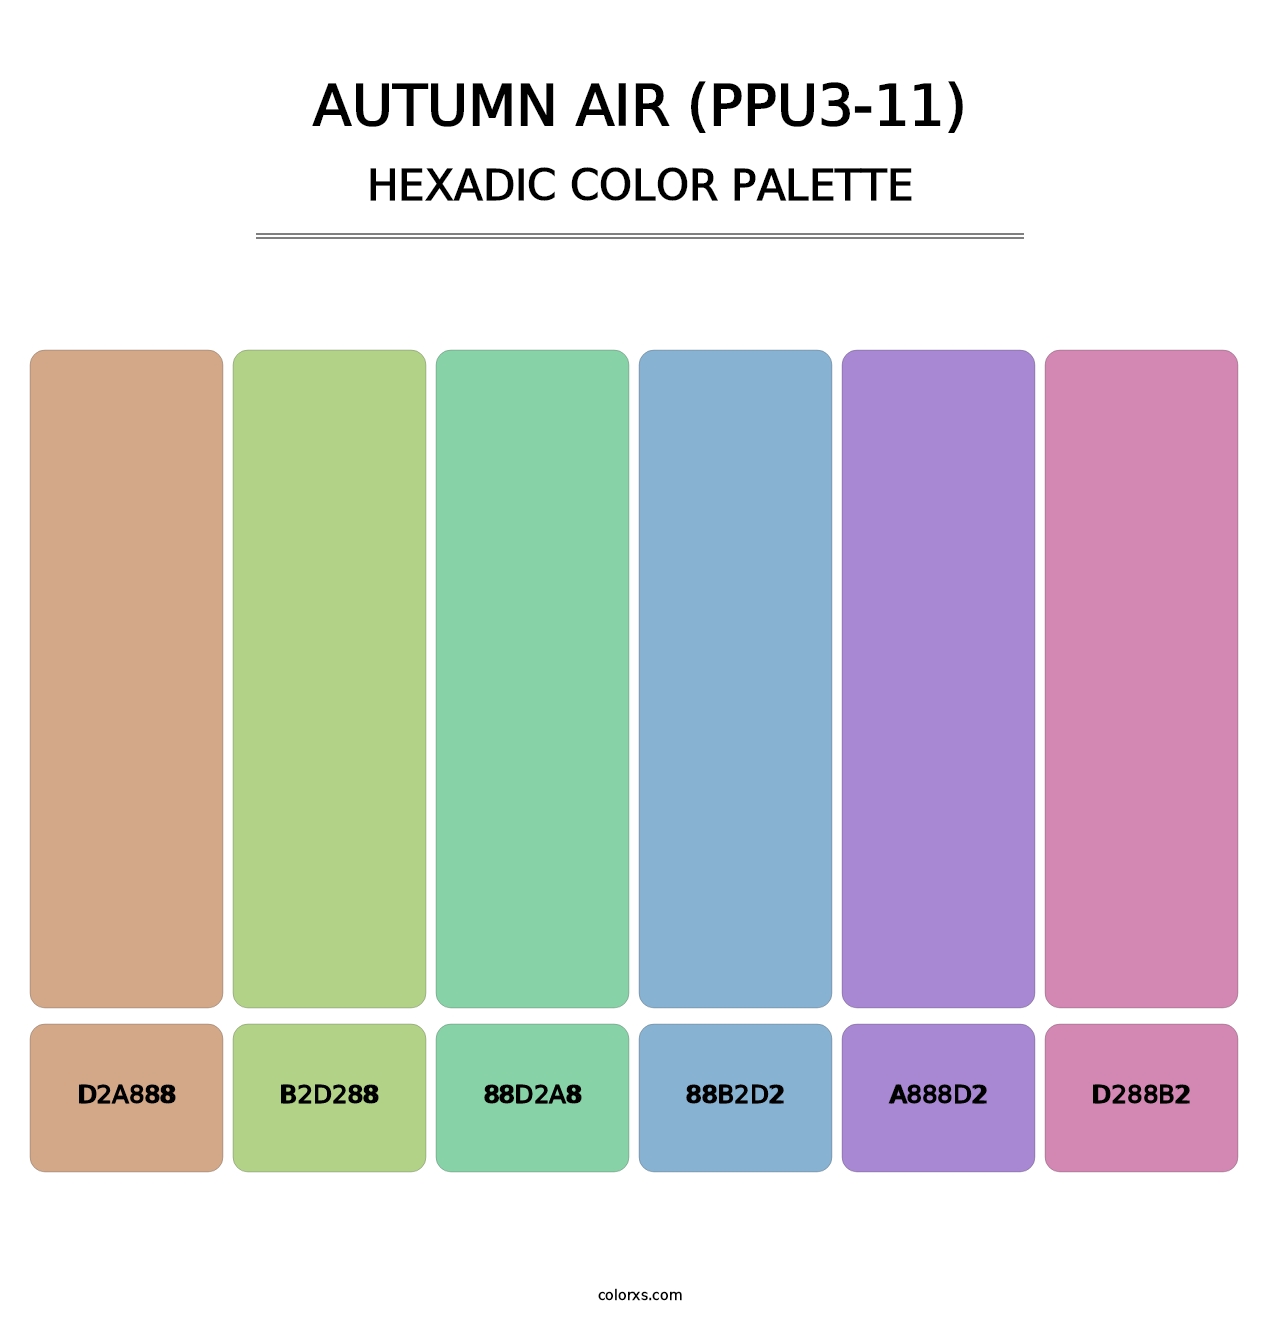 Autumn Air (PPU3-11) - Hexadic Color Palette